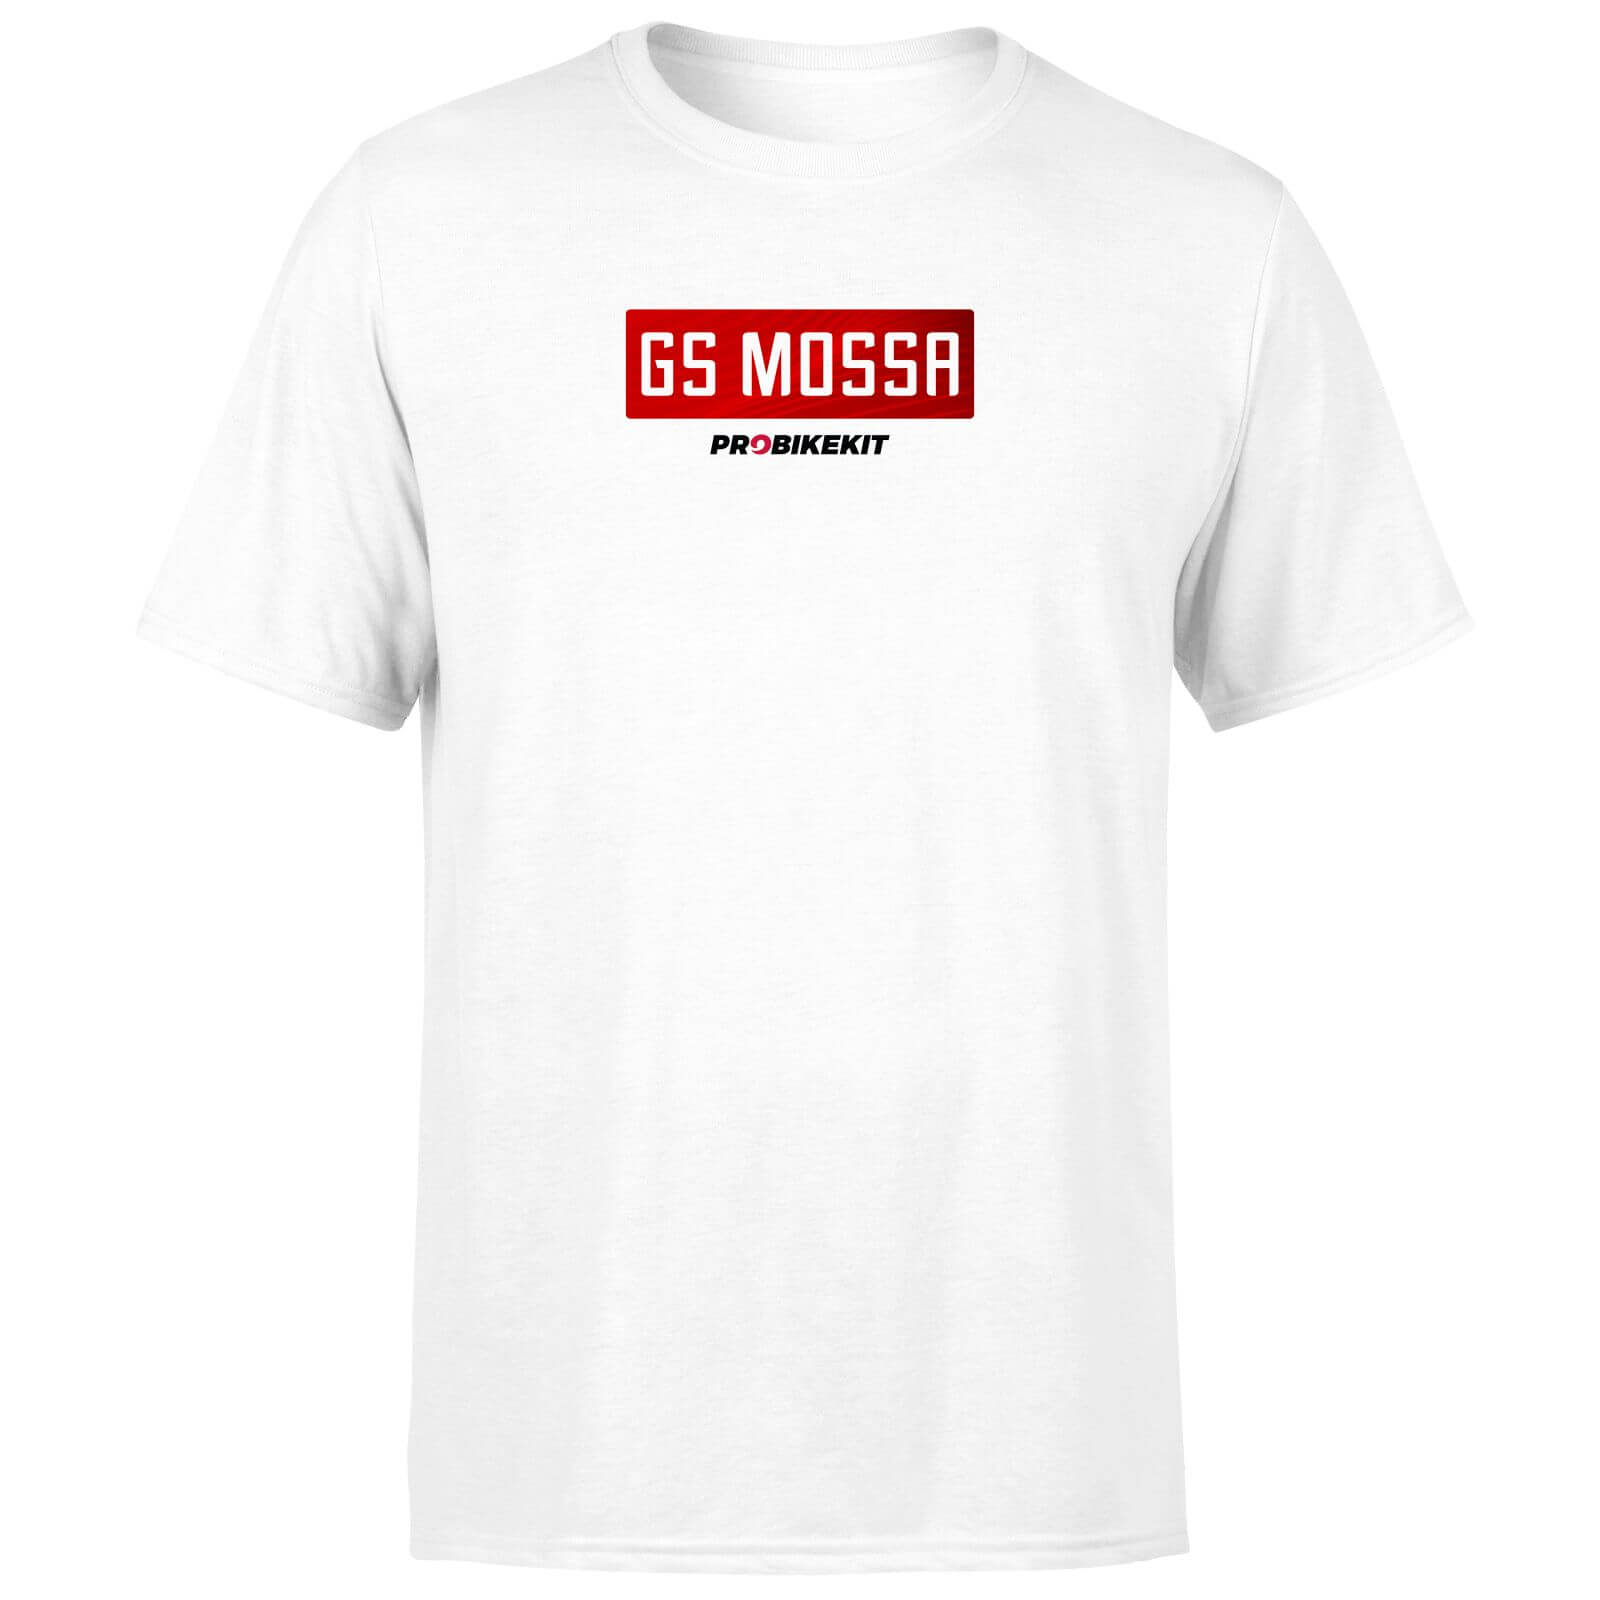 PBK GS Mossa Boxed Chest Logo Men's T-Shirt - White - L - White